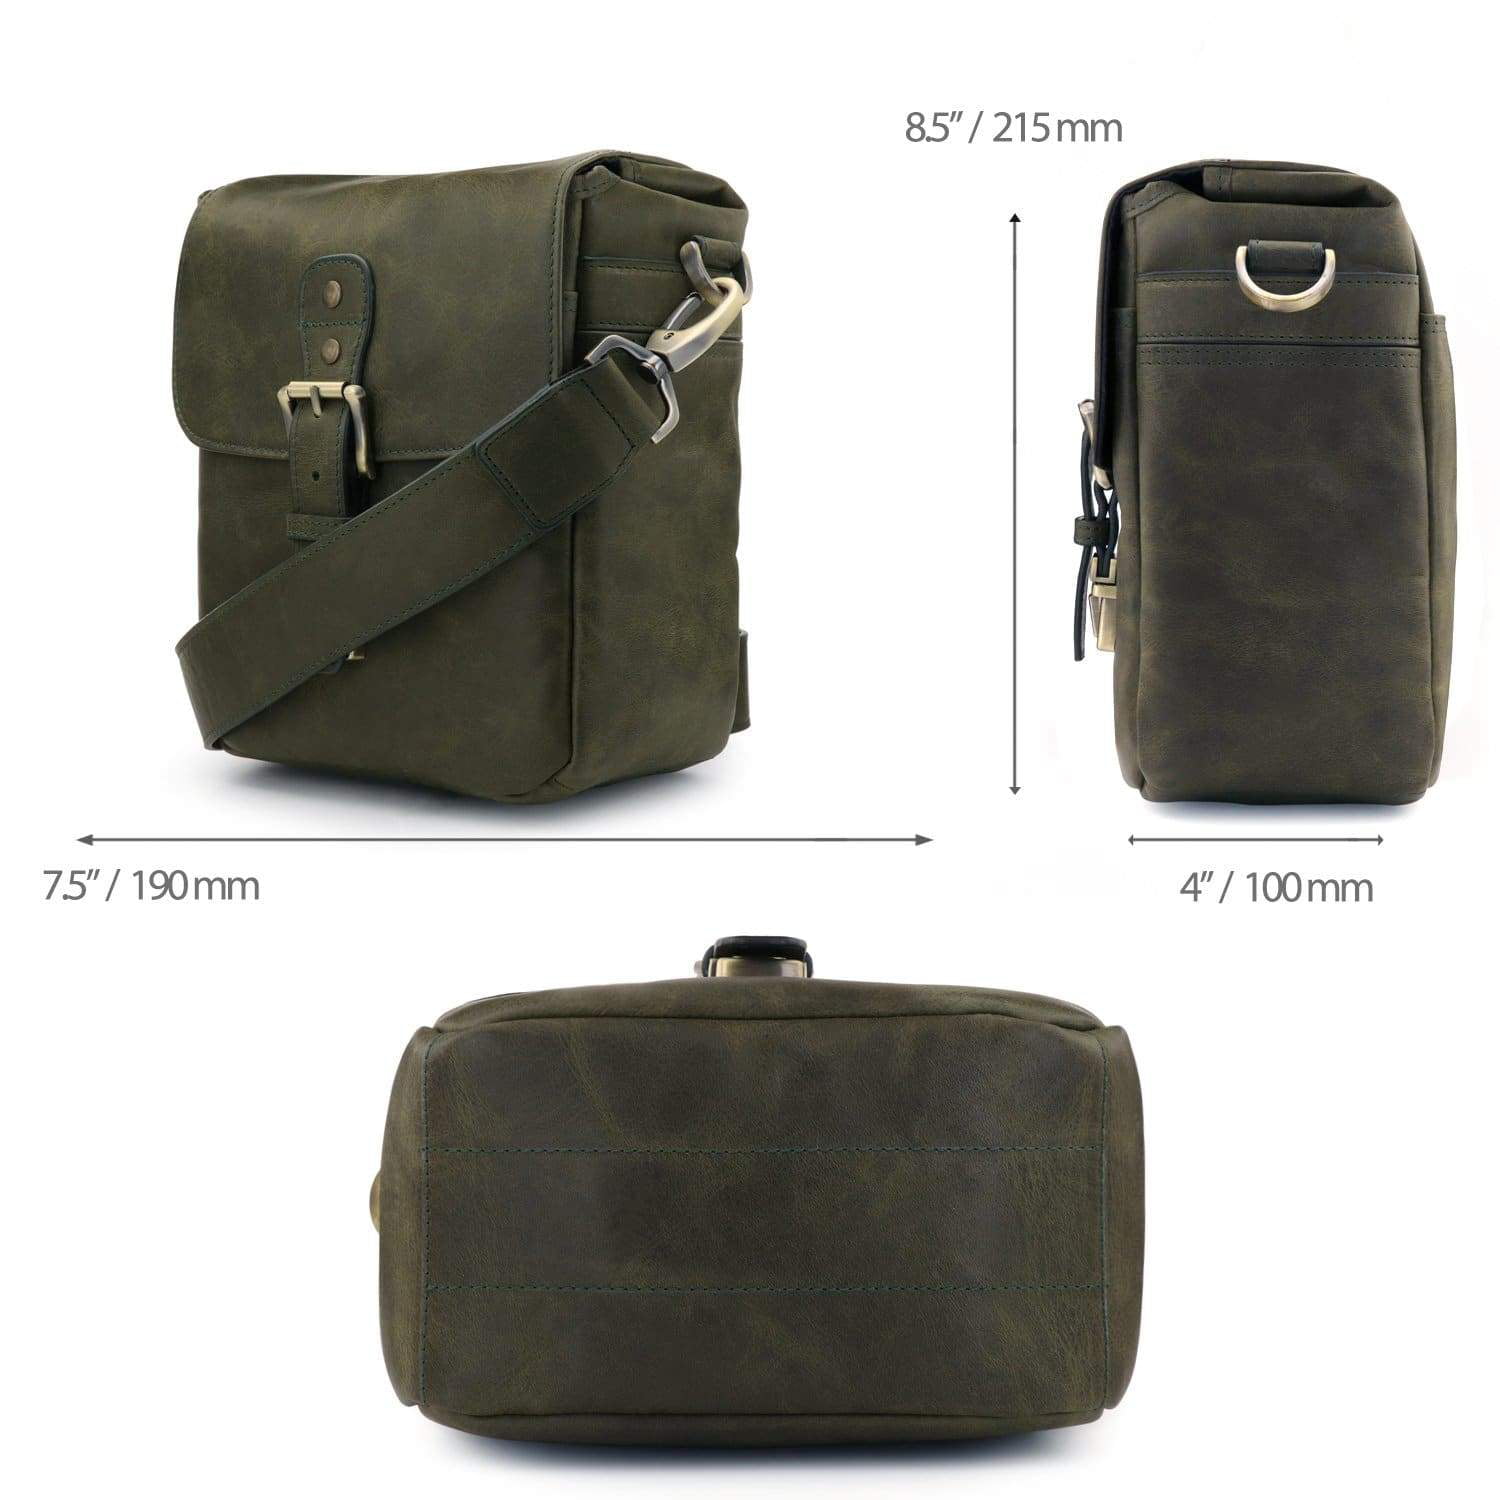 Torres Pro Canvas Leather Vintage Laptop Camera Bag Briefcase Satchel  Portfolio Notebook Tablet Messenger Bag for Men, Women, Business